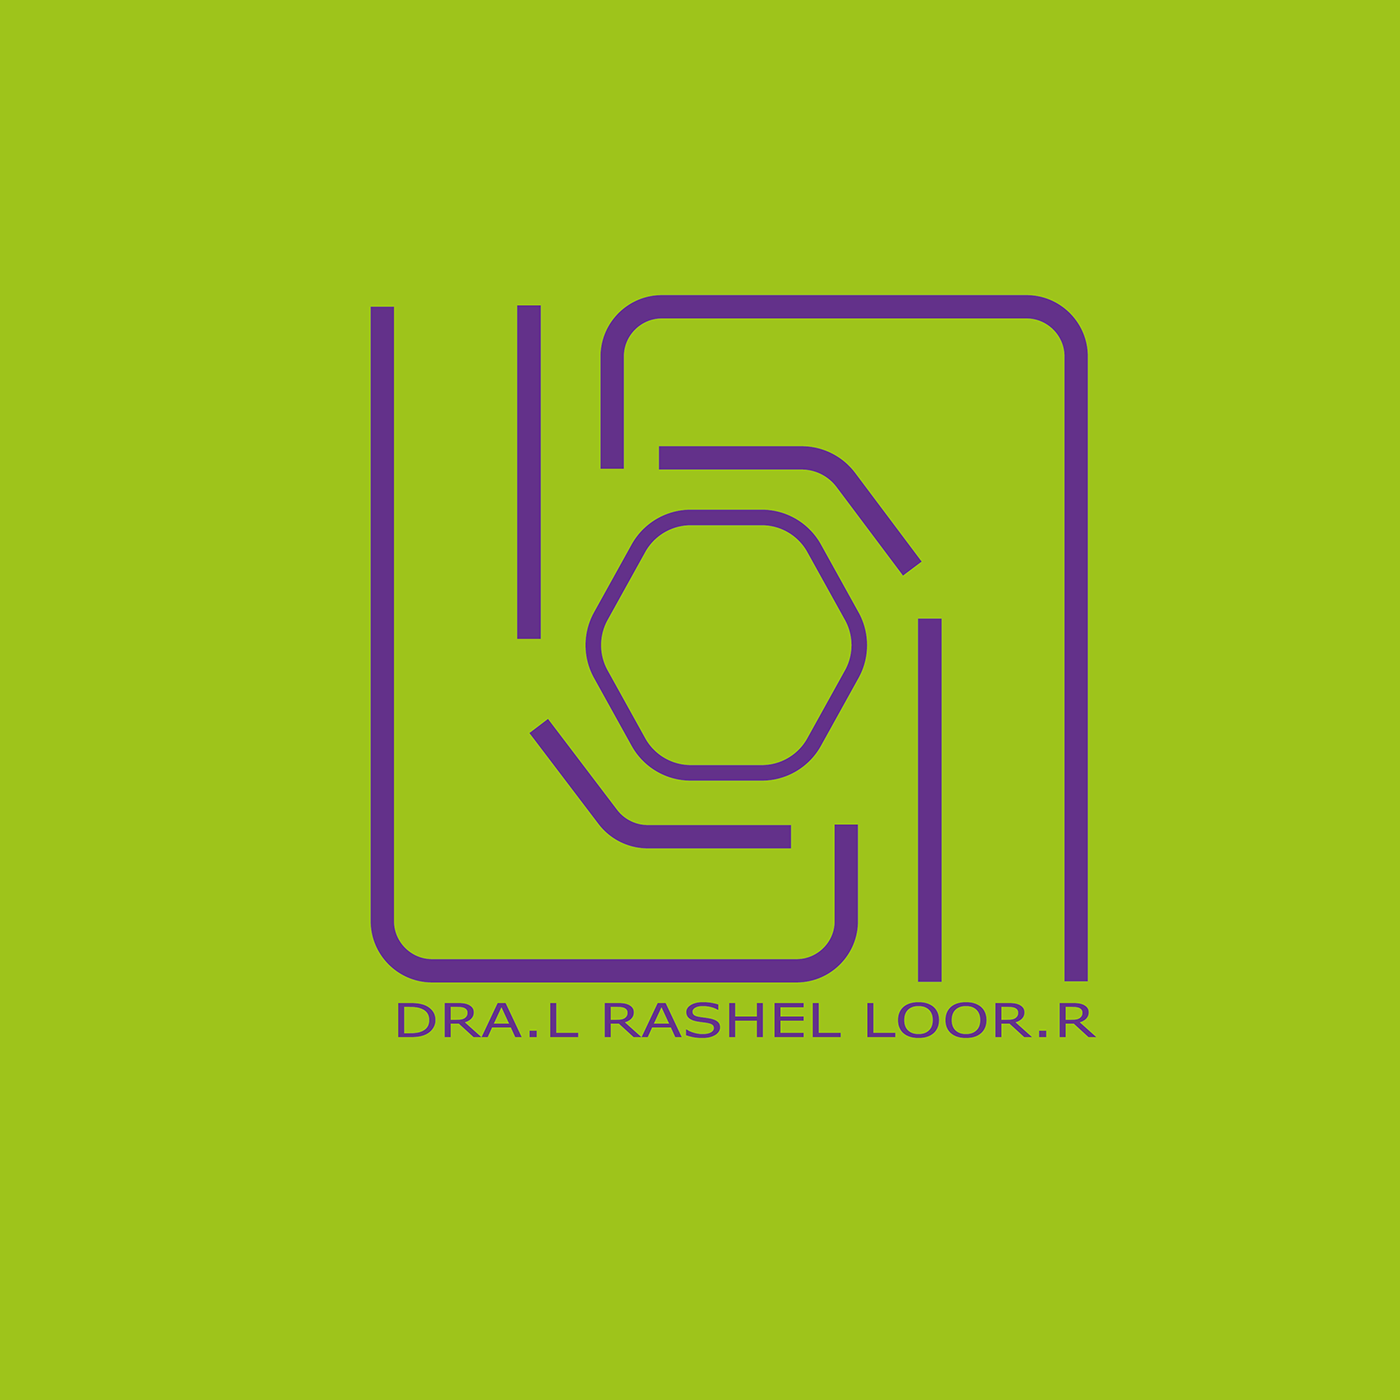 design logo minimalist precolombino